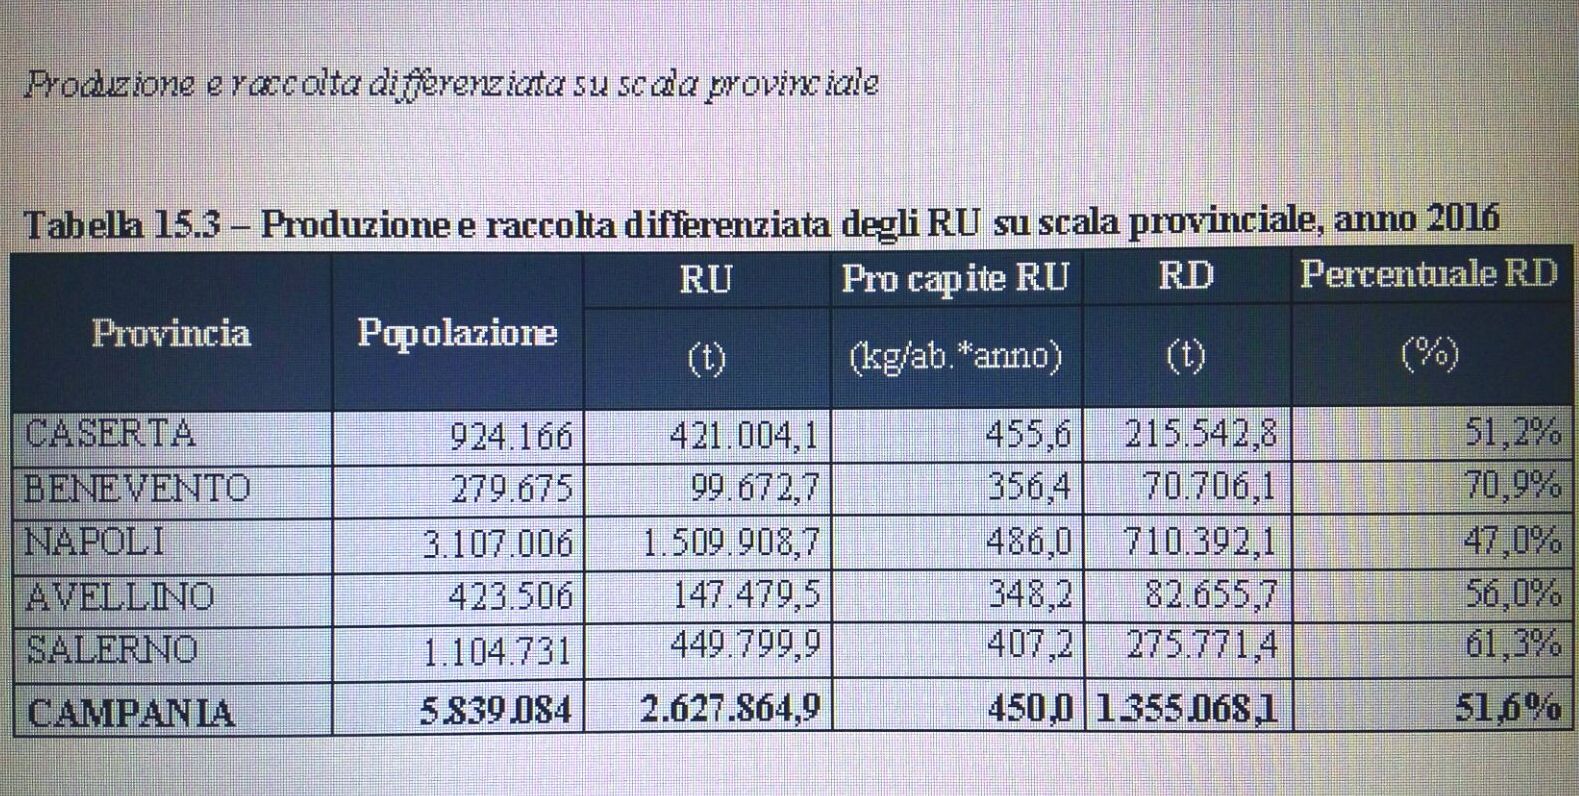 Benevento| Rifiuti, nel Sannio percentuale raccolta. Ricci: “merito alla Samte”